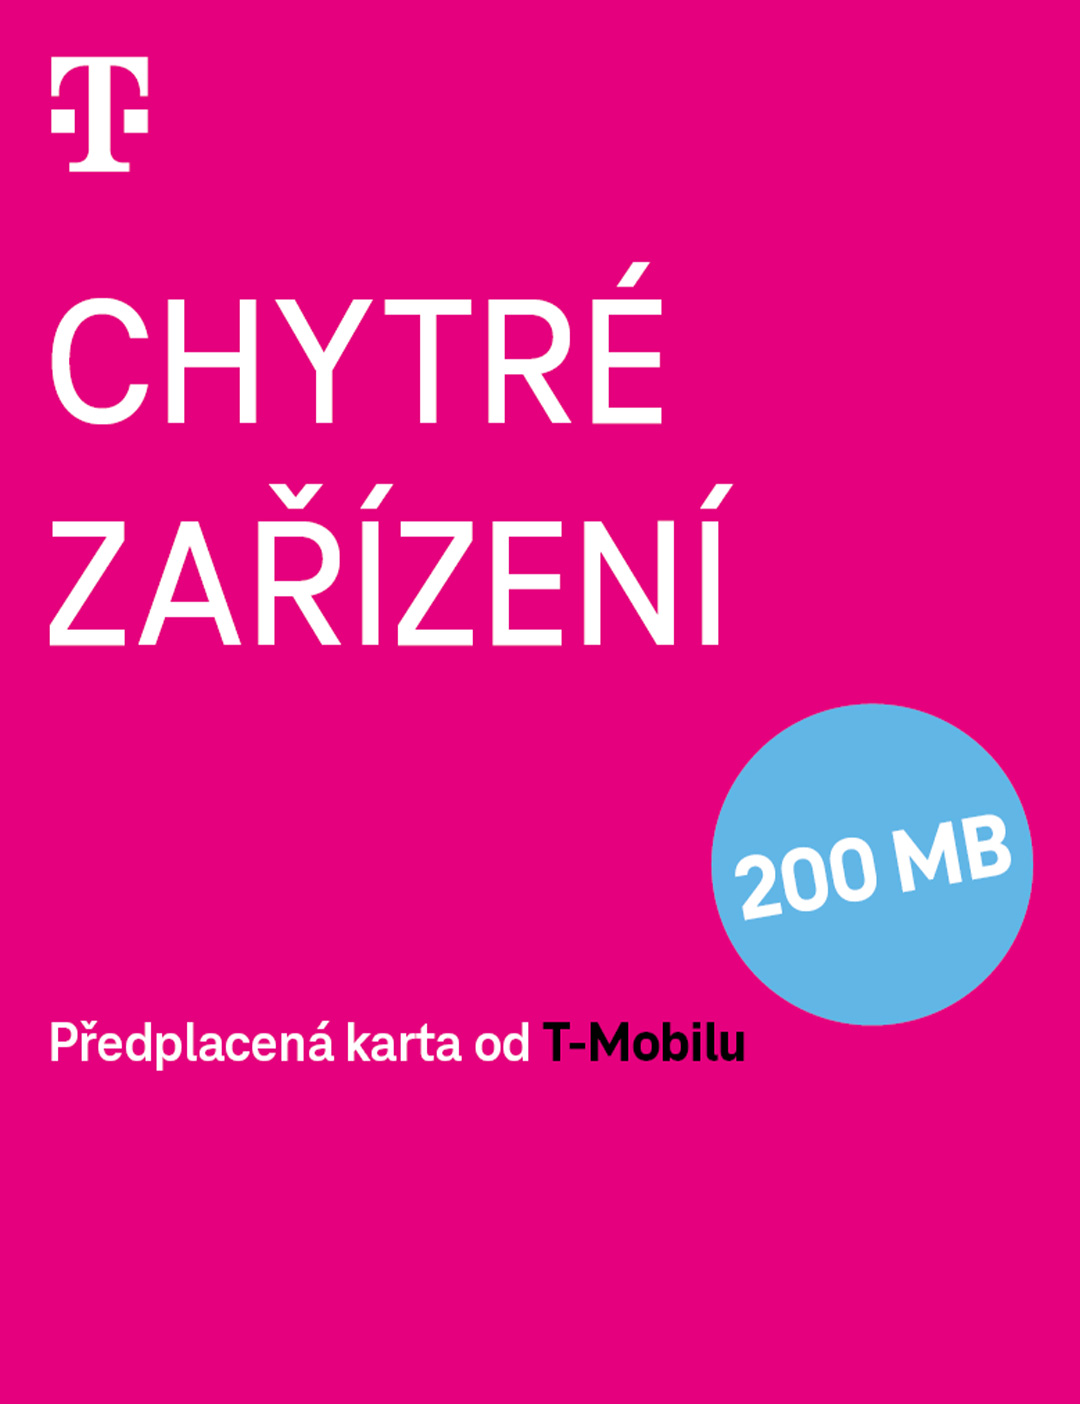 Twist Chytré zařízení - T-Mobile.cz